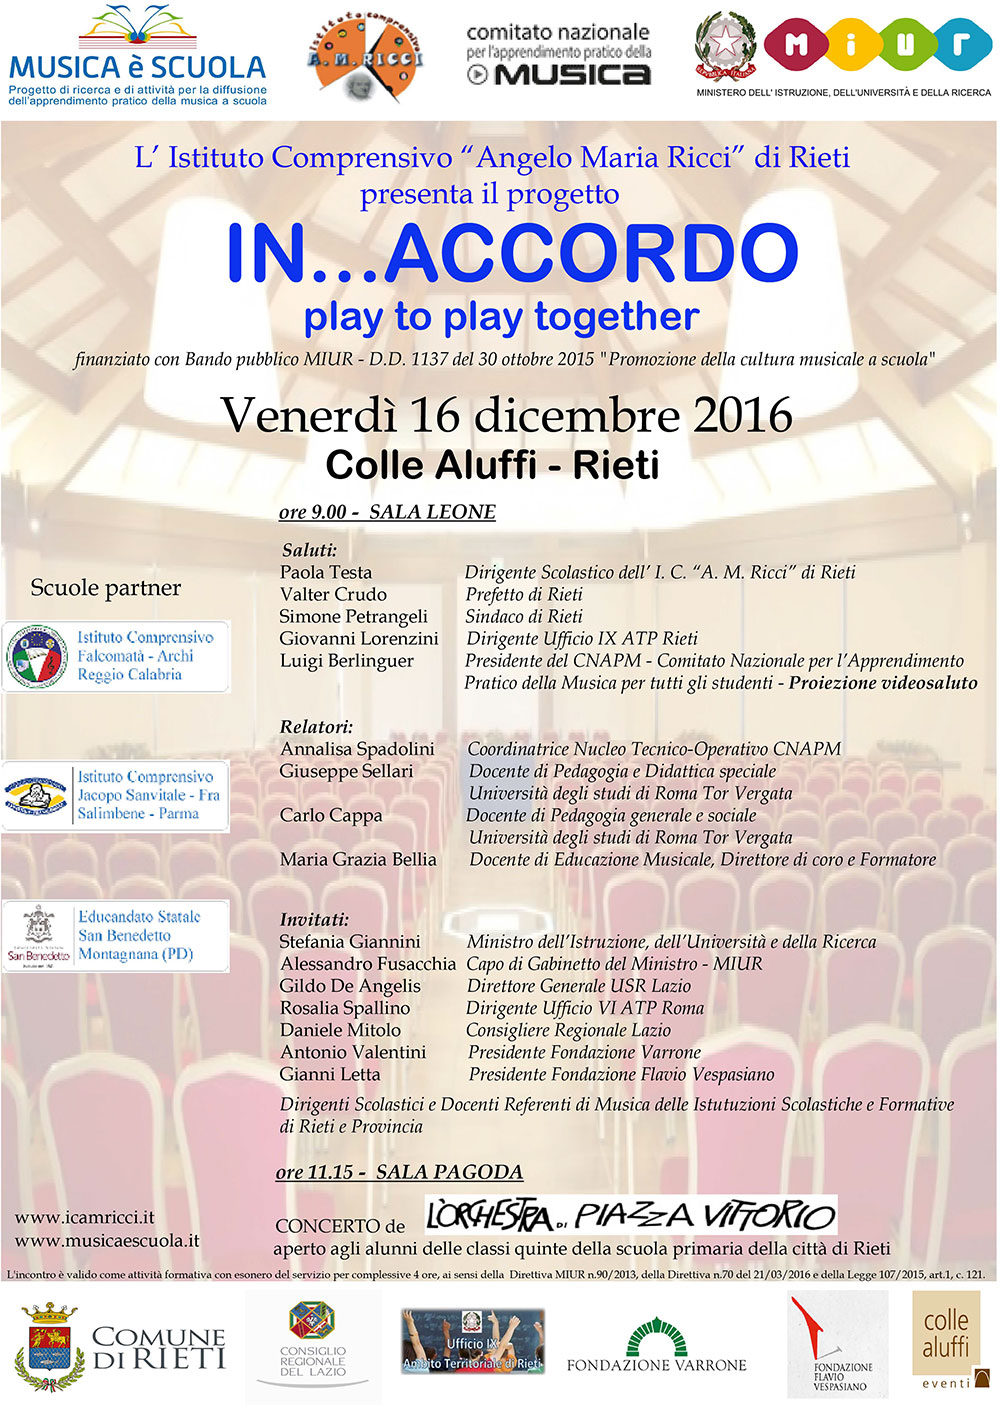 16/12/2016 presentazione progetto 'In...Accordo'